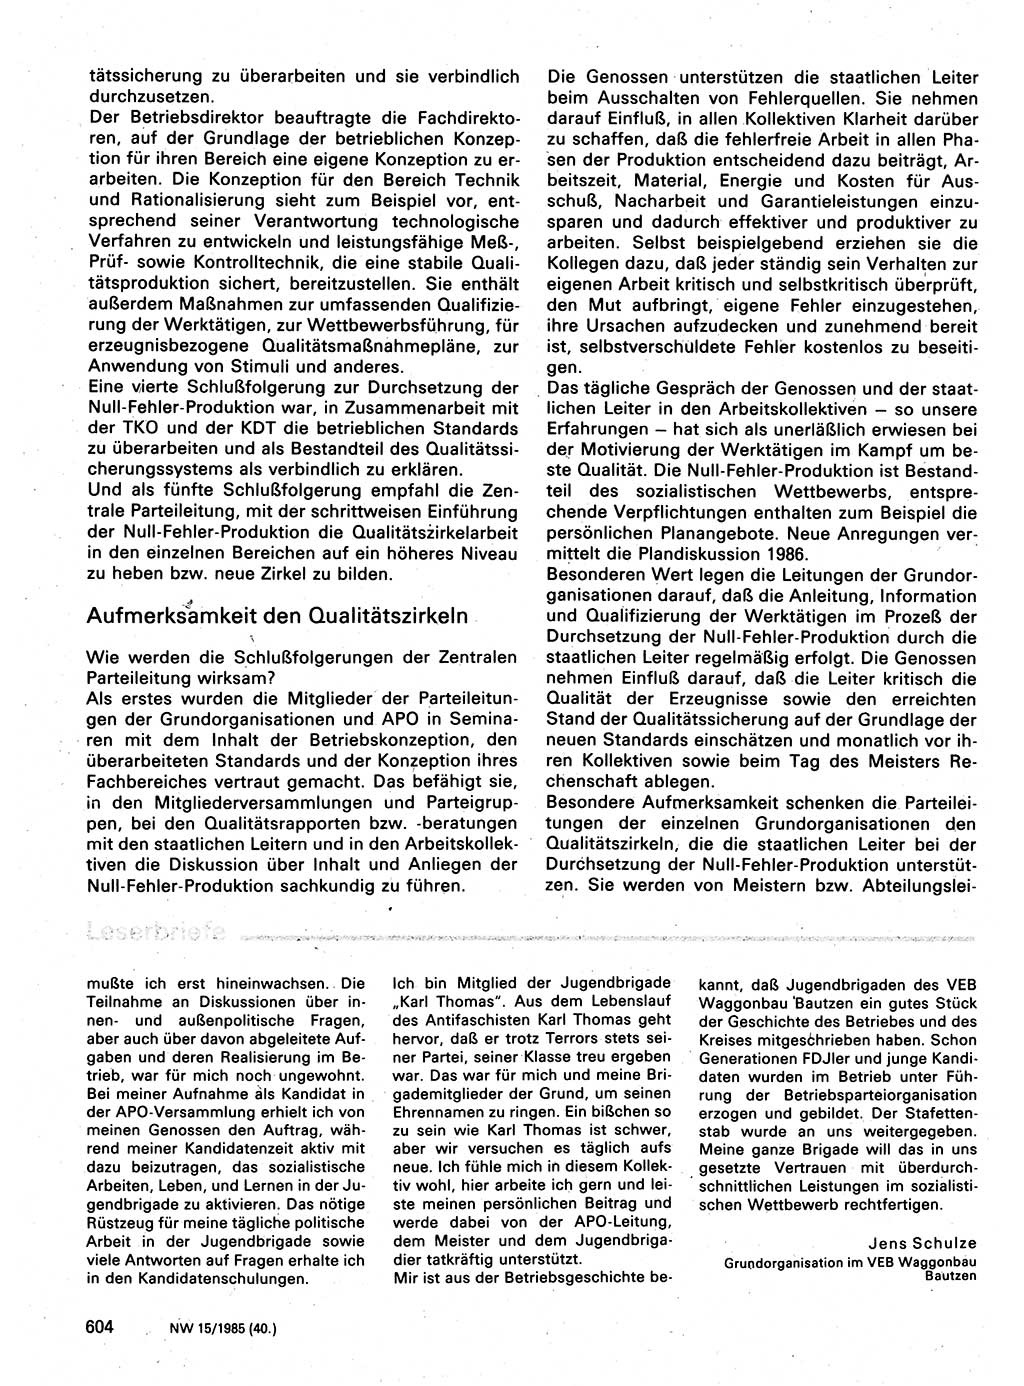 Neuer Weg (NW), Organ des Zentralkomitees (ZK) der SED (Sozialistische Einheitspartei Deutschlands) für Fragen des Parteilebens, 40. Jahrgang [Deutsche Demokratische Republik (DDR)] 1985, Seite 604 (NW ZK SED DDR 1985, S. 604)